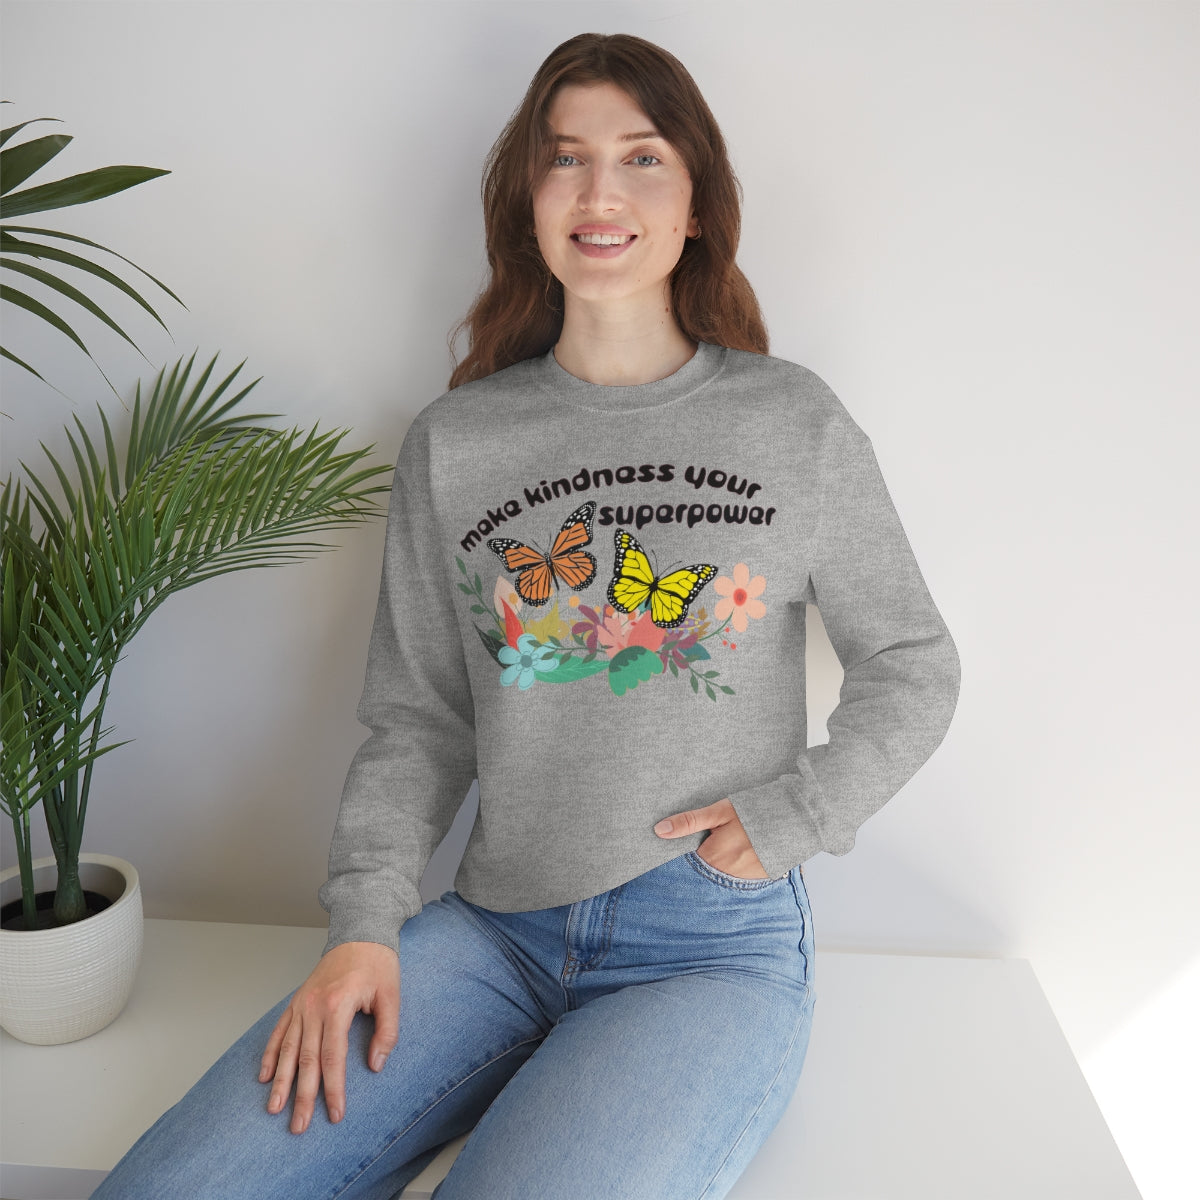 Make Kindness Your Superpower - Unisex Sweatshirt